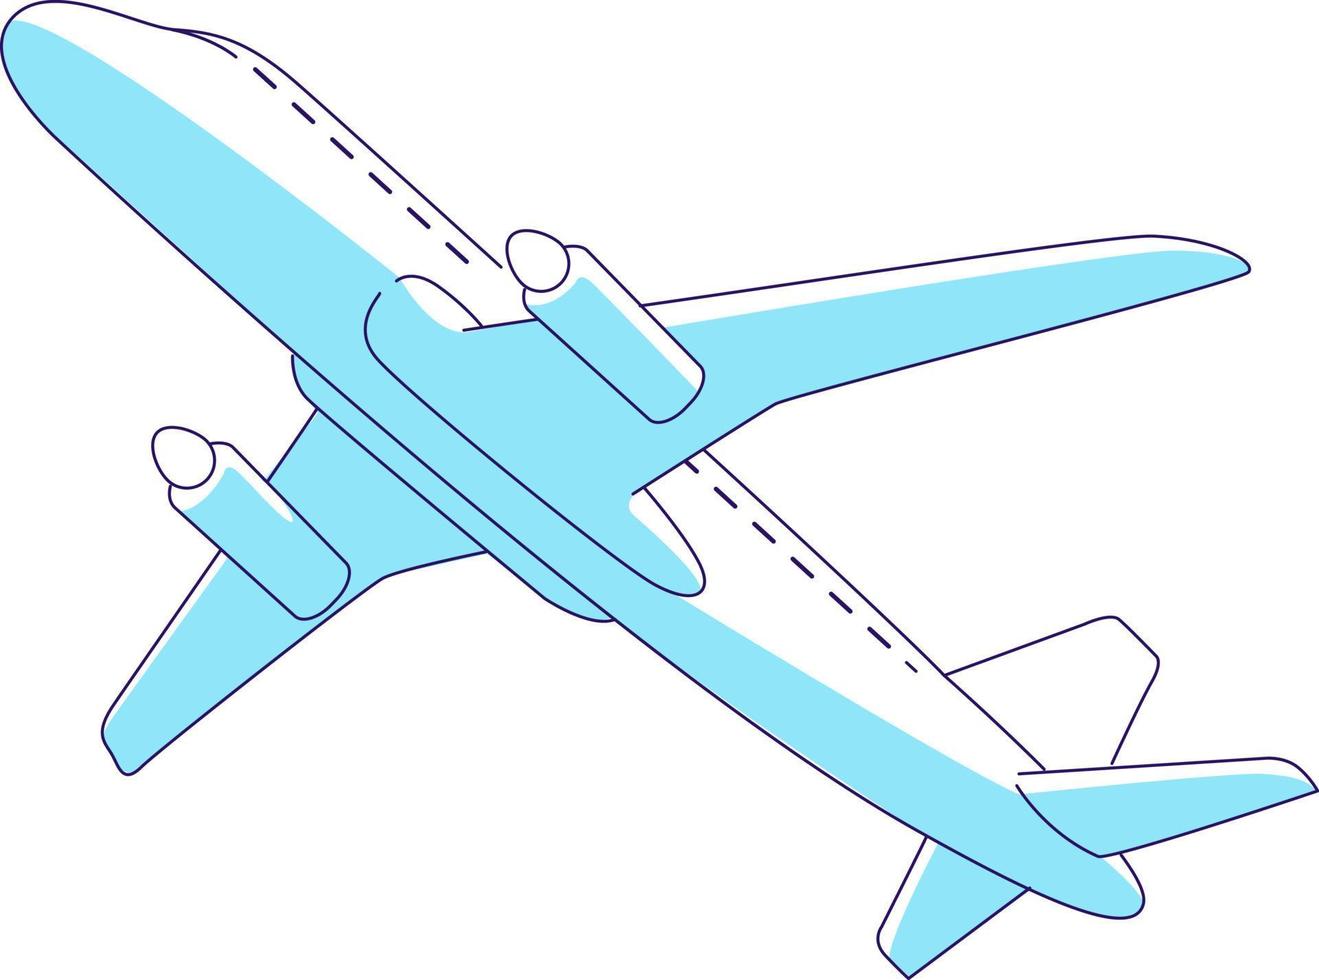 conception de vecteur illustratif dessin animé avion 17996078 Art